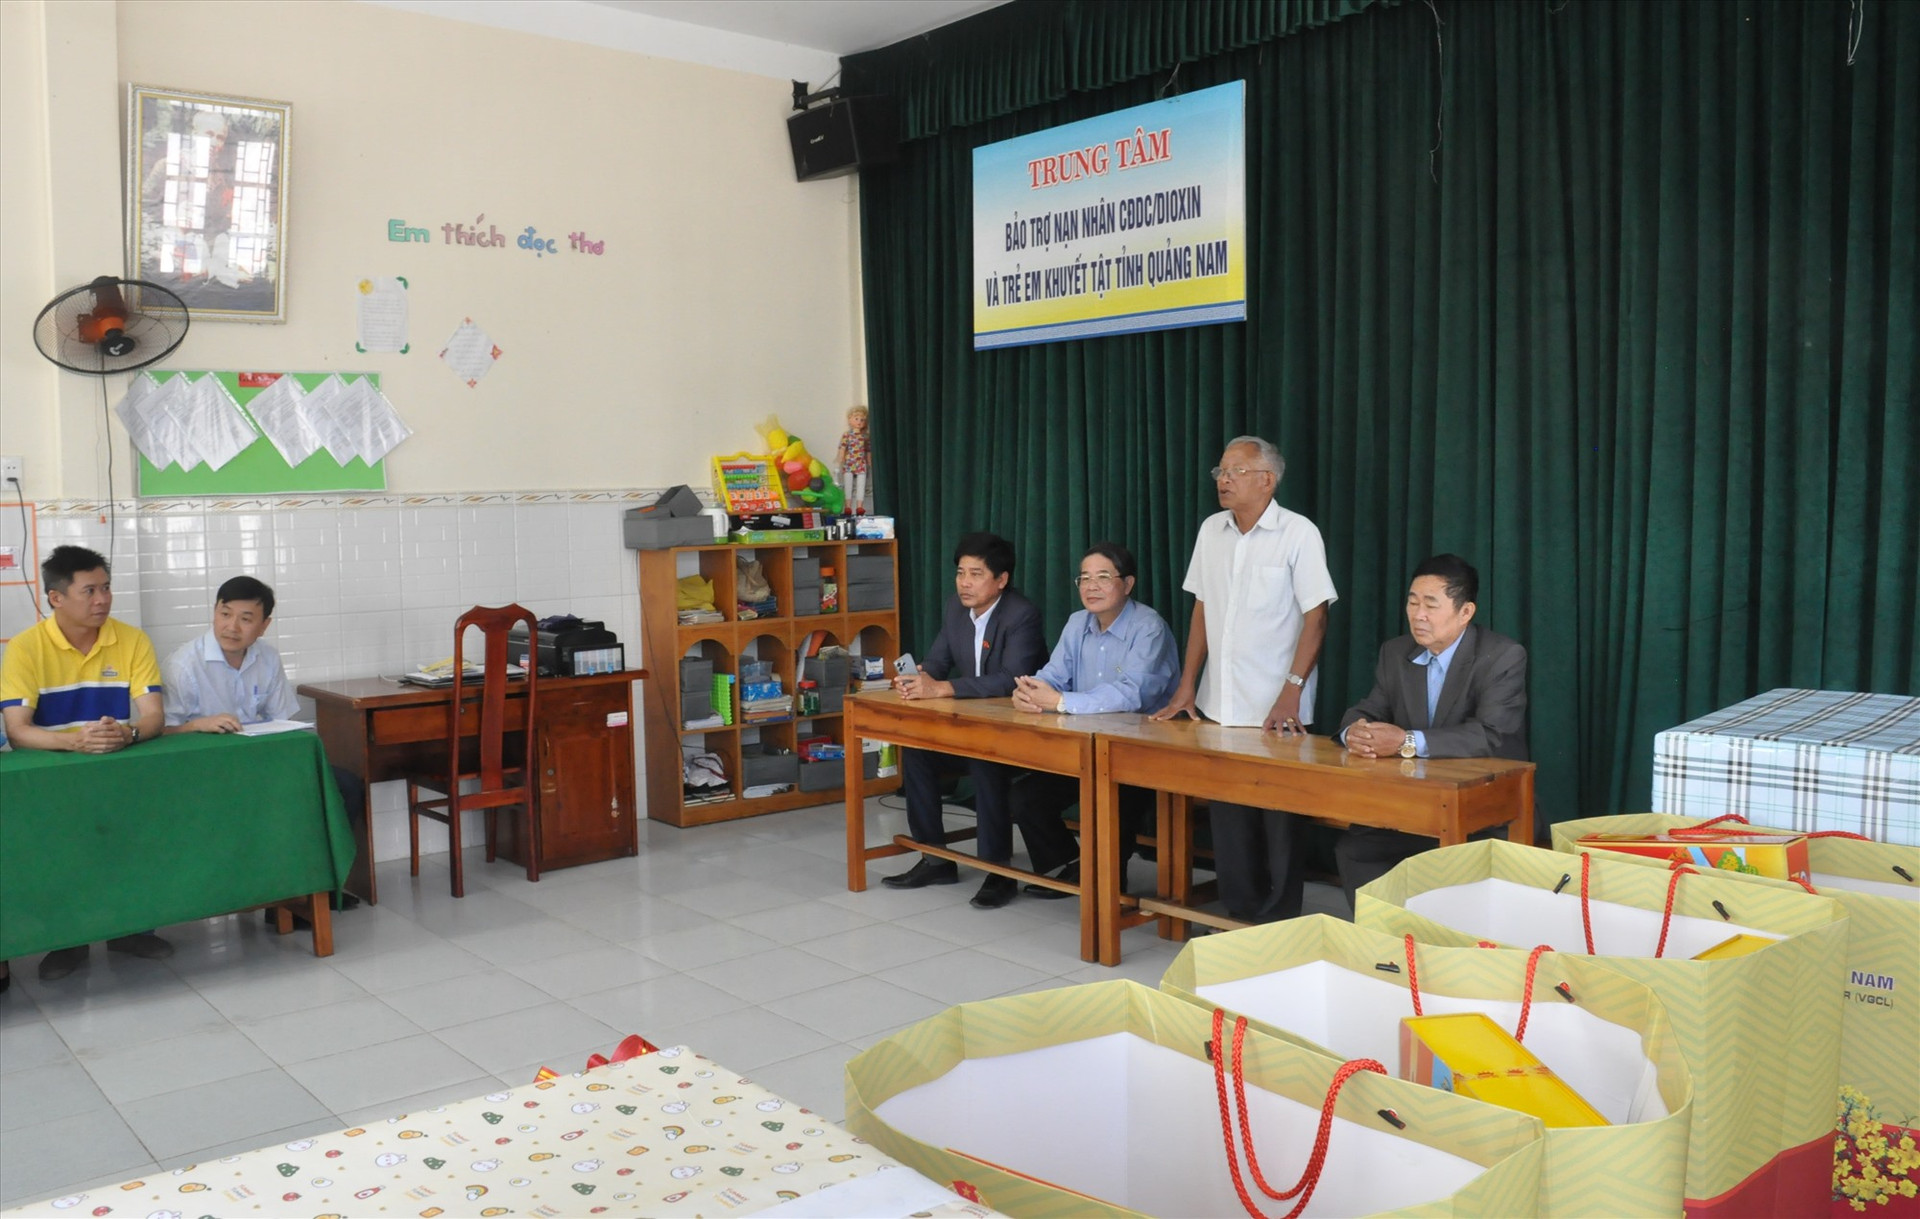 Phó Chủ tịch Quốc hội Nguyễn Đức Hải đến thăm, tặng quà tết cho cán bộ, nhân viên, người lao động của Trung tâm Trung tâm Bảo trợ nạn nhân chất độc da cam/đioxin và trẻ em khuyết tật Quảng Nam. Ảnh: N.Đ